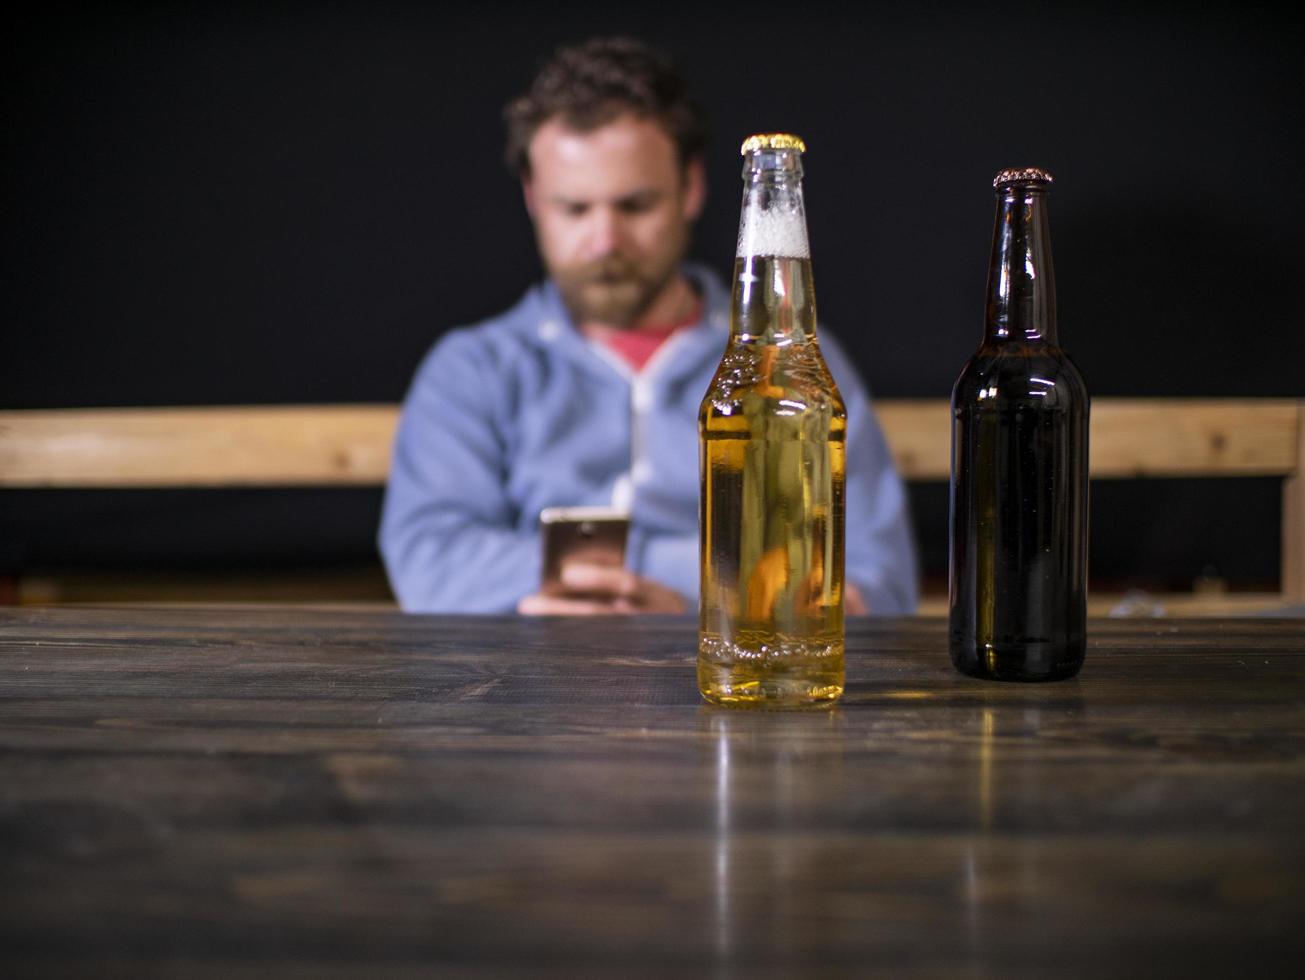 duas garrafas de cerveja estão em cima da mesa, no contexto de um homem sentado que olha para o telefone foto